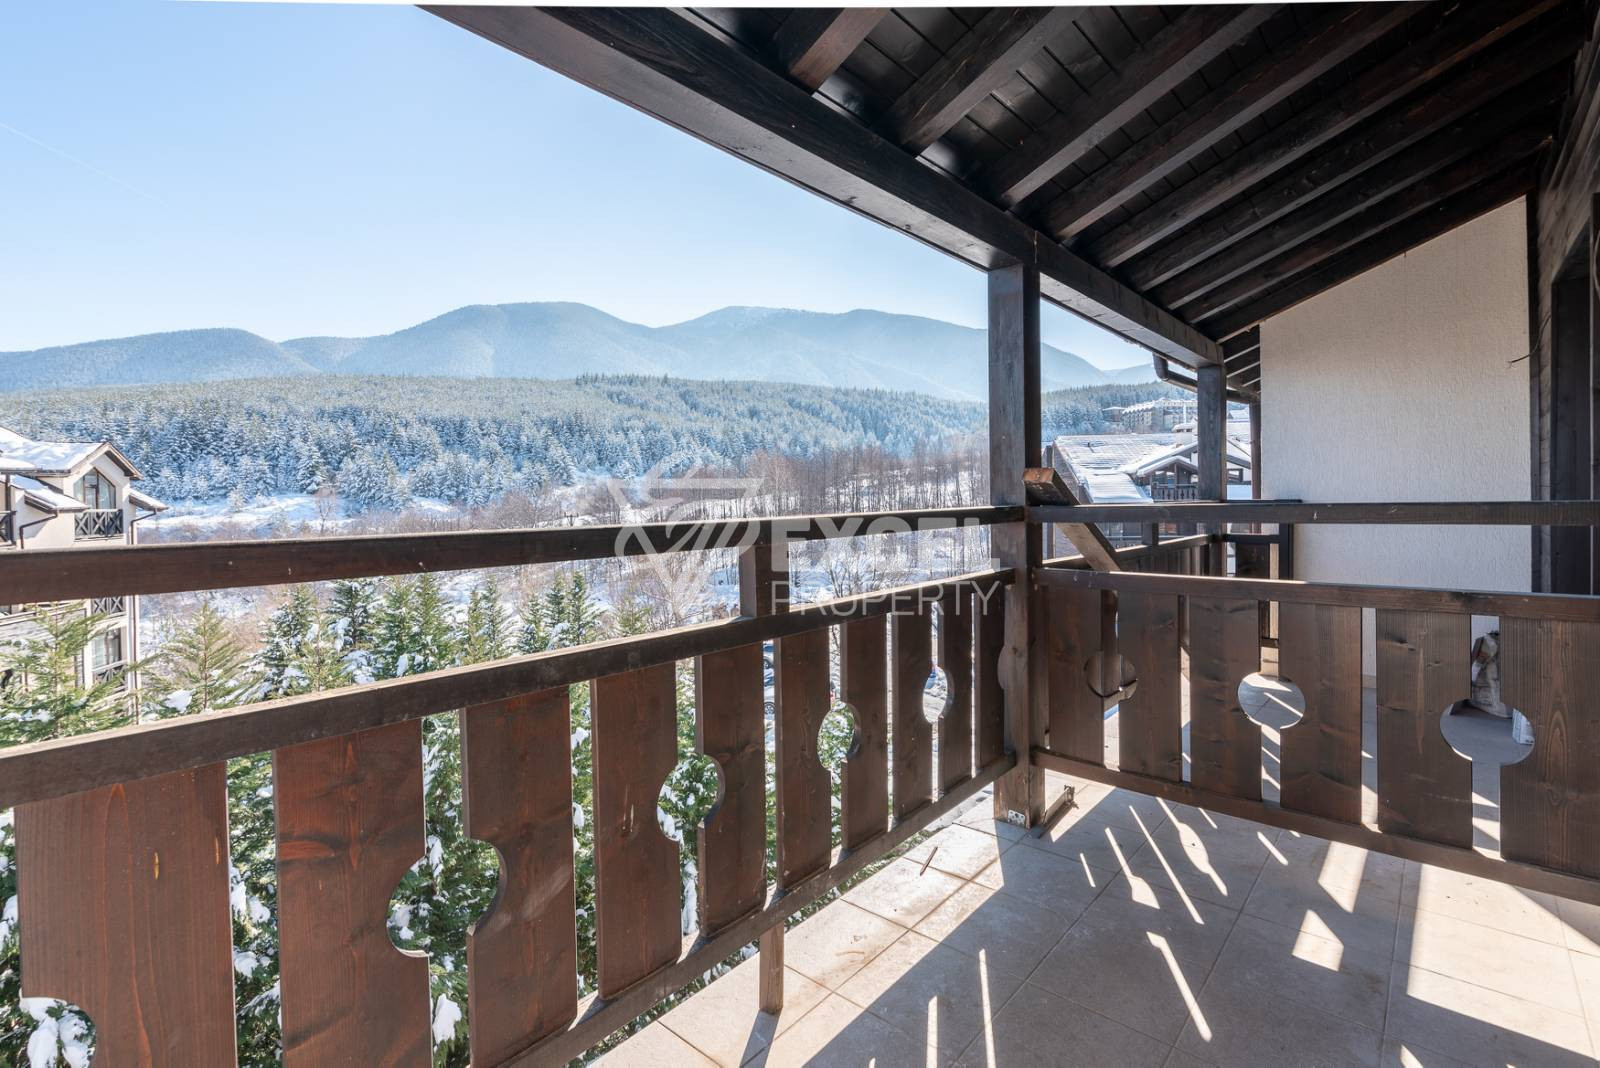 Продается трехкомнатная квартира в низконалоговом доме с потрясающей панорамой Пирин